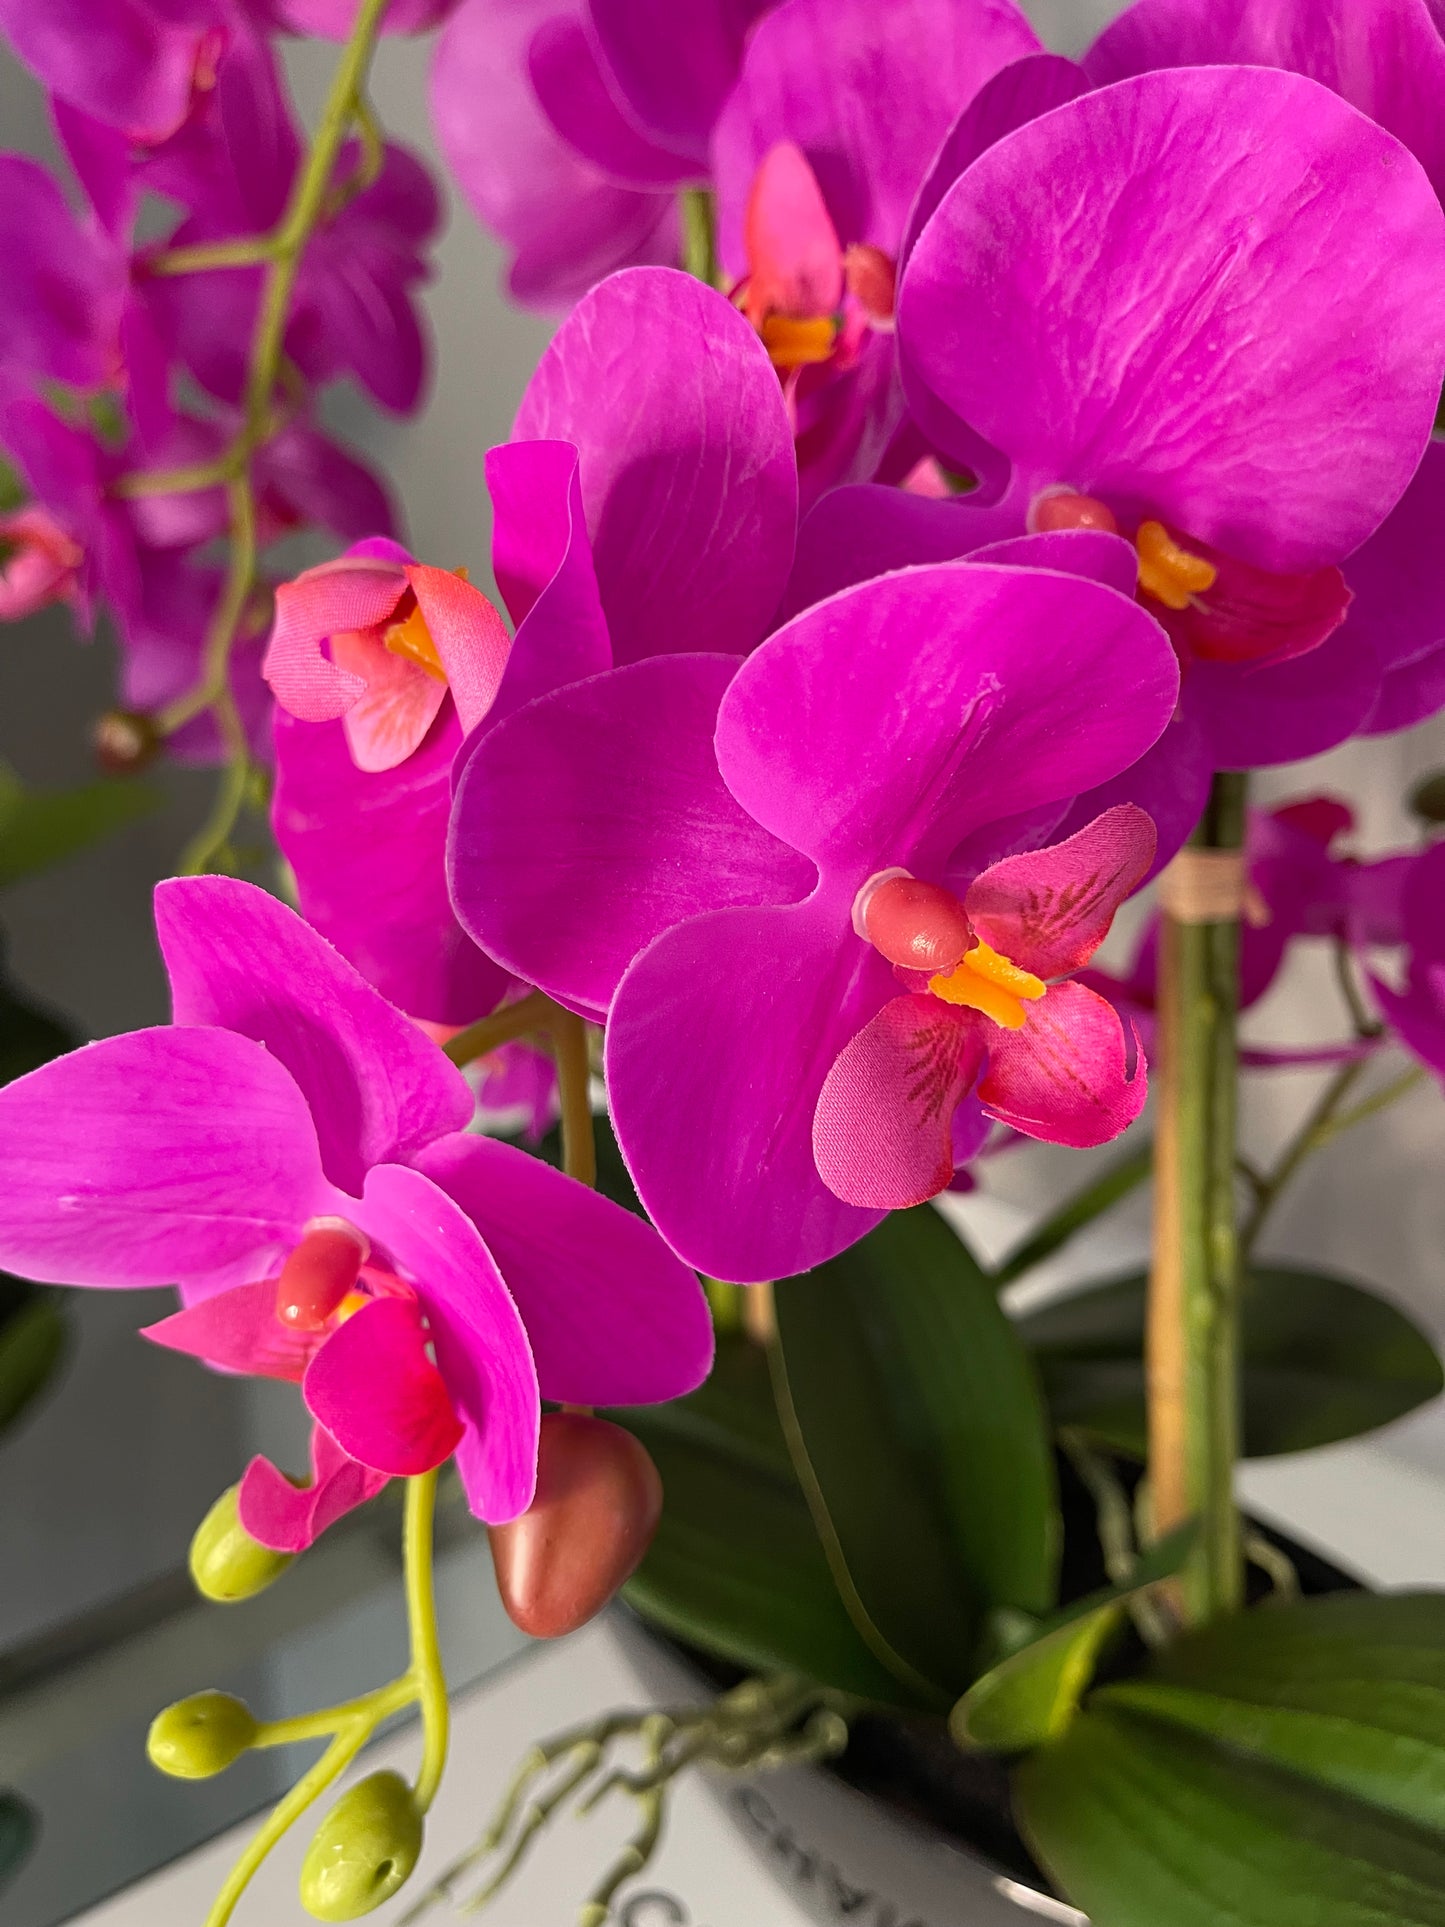 Pink Phalaenopsis Orchid Floral Arrangement in Black Vase